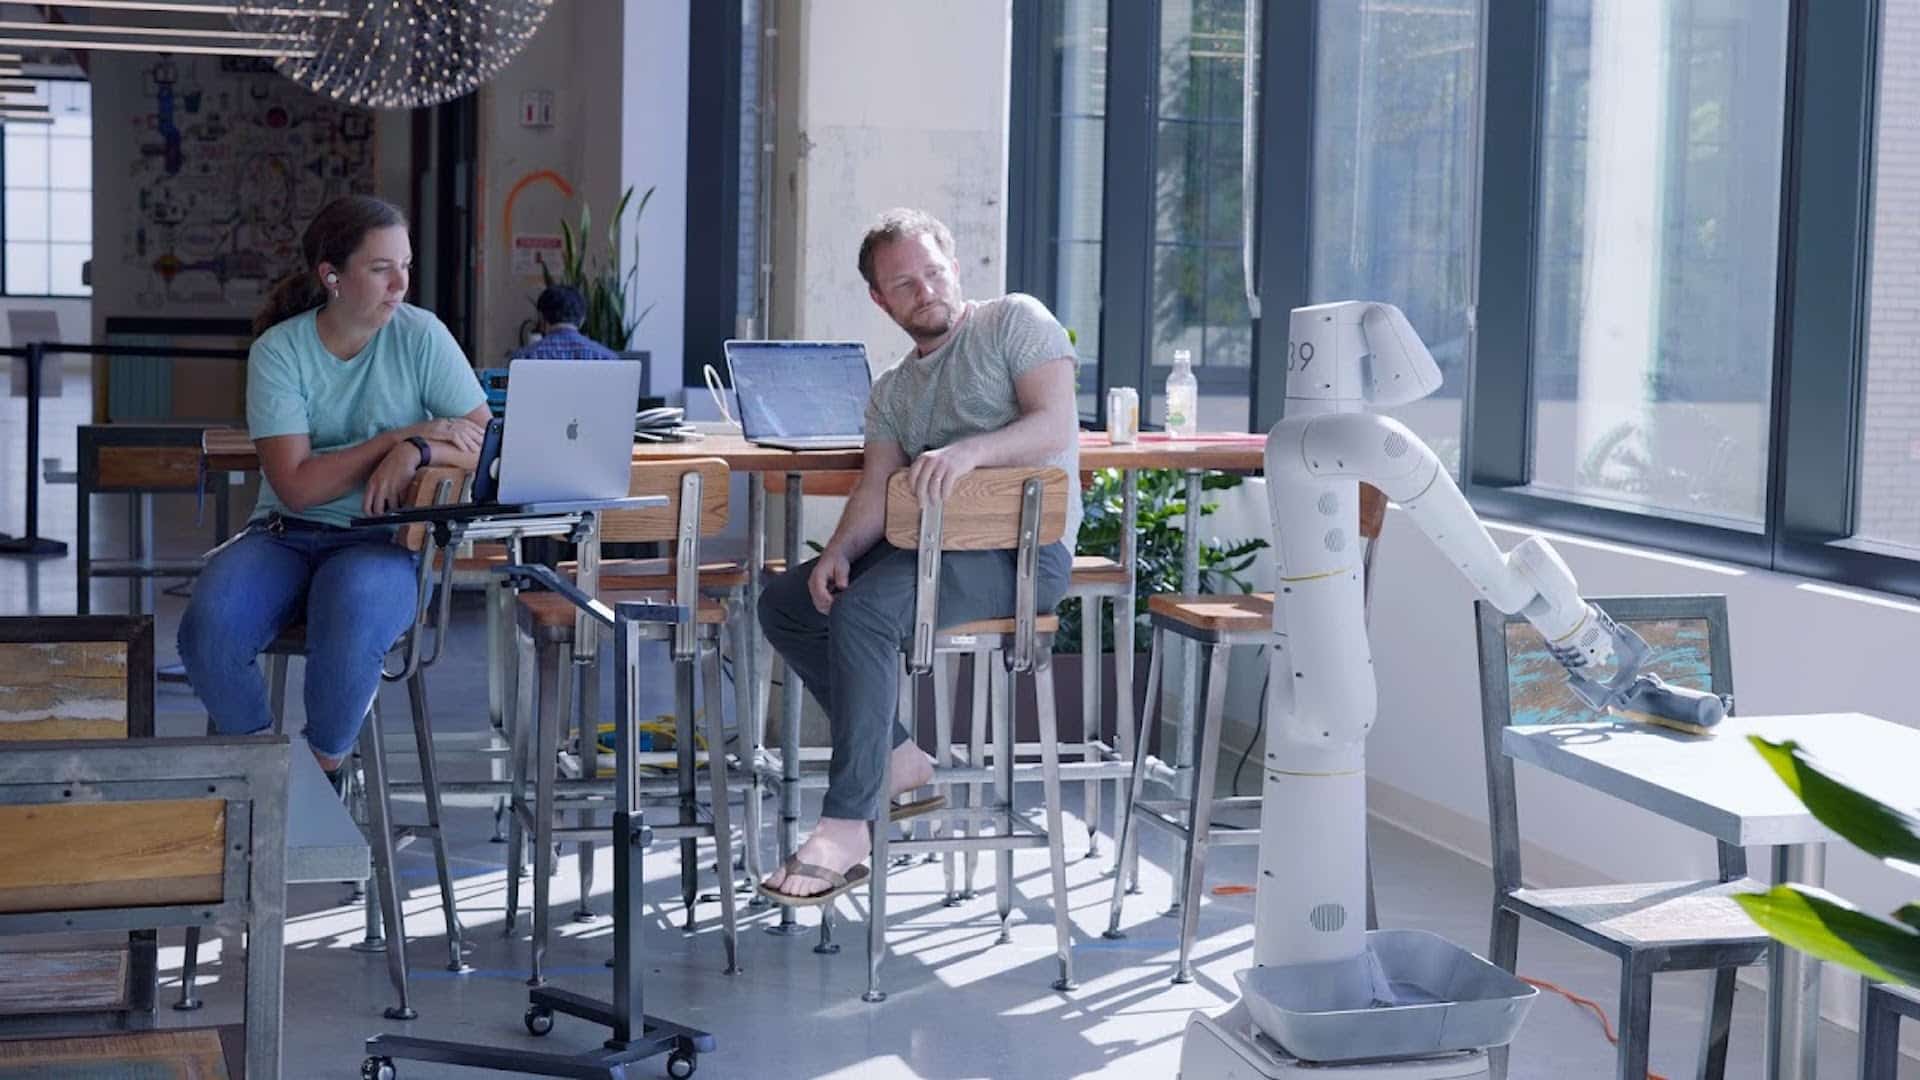 Aperçu d'un robot dans les bureaux de Google.